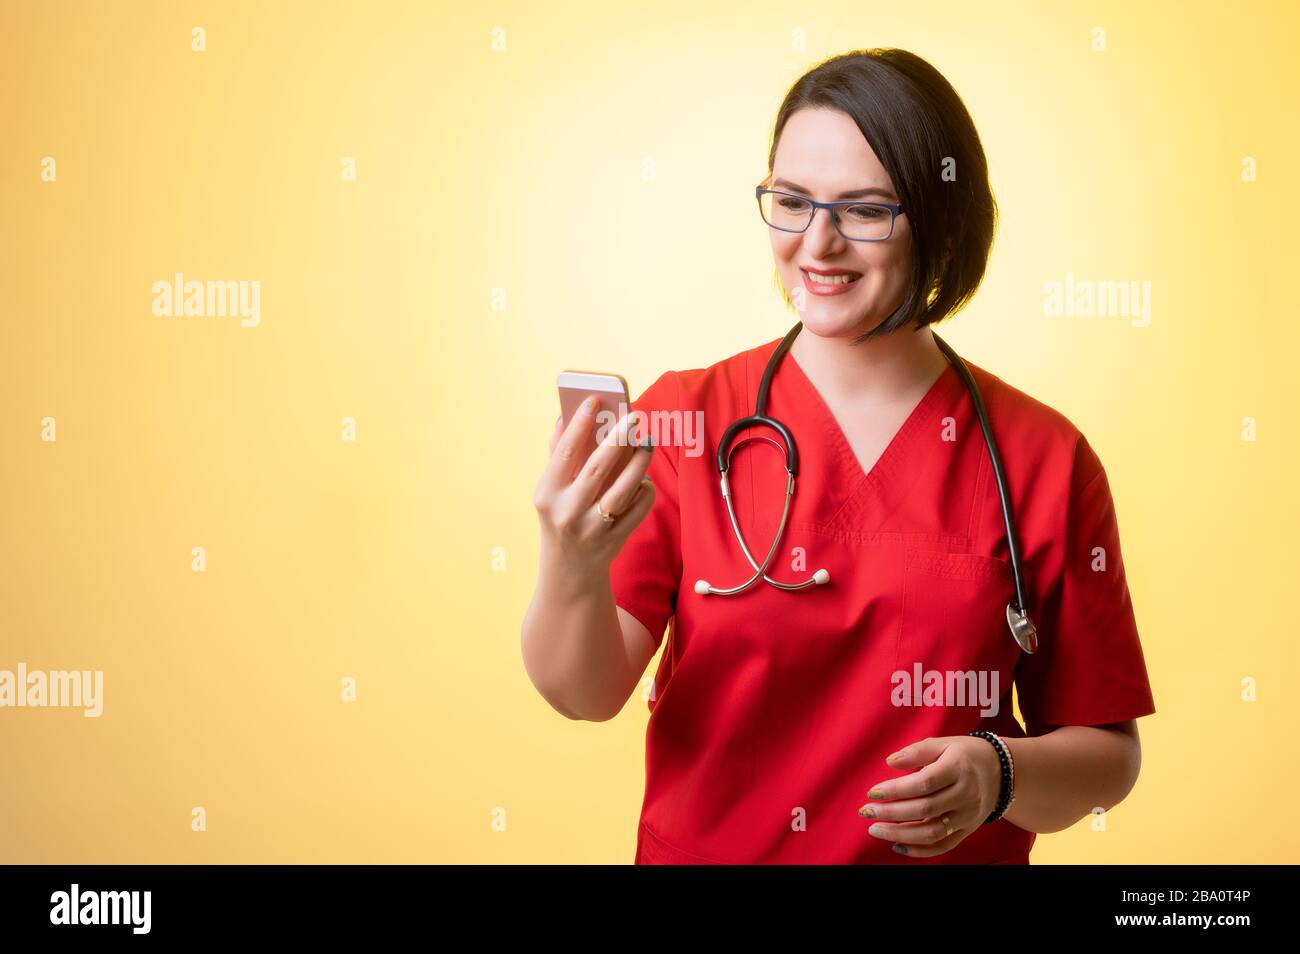 Porträt der schönen Frau Doktor mit Stethoskop mit roten Schruben, mit braunen Haaren, halten Smartphone, SMS-Nachrichten glückliches Gesicht auf einem y Stockfoto